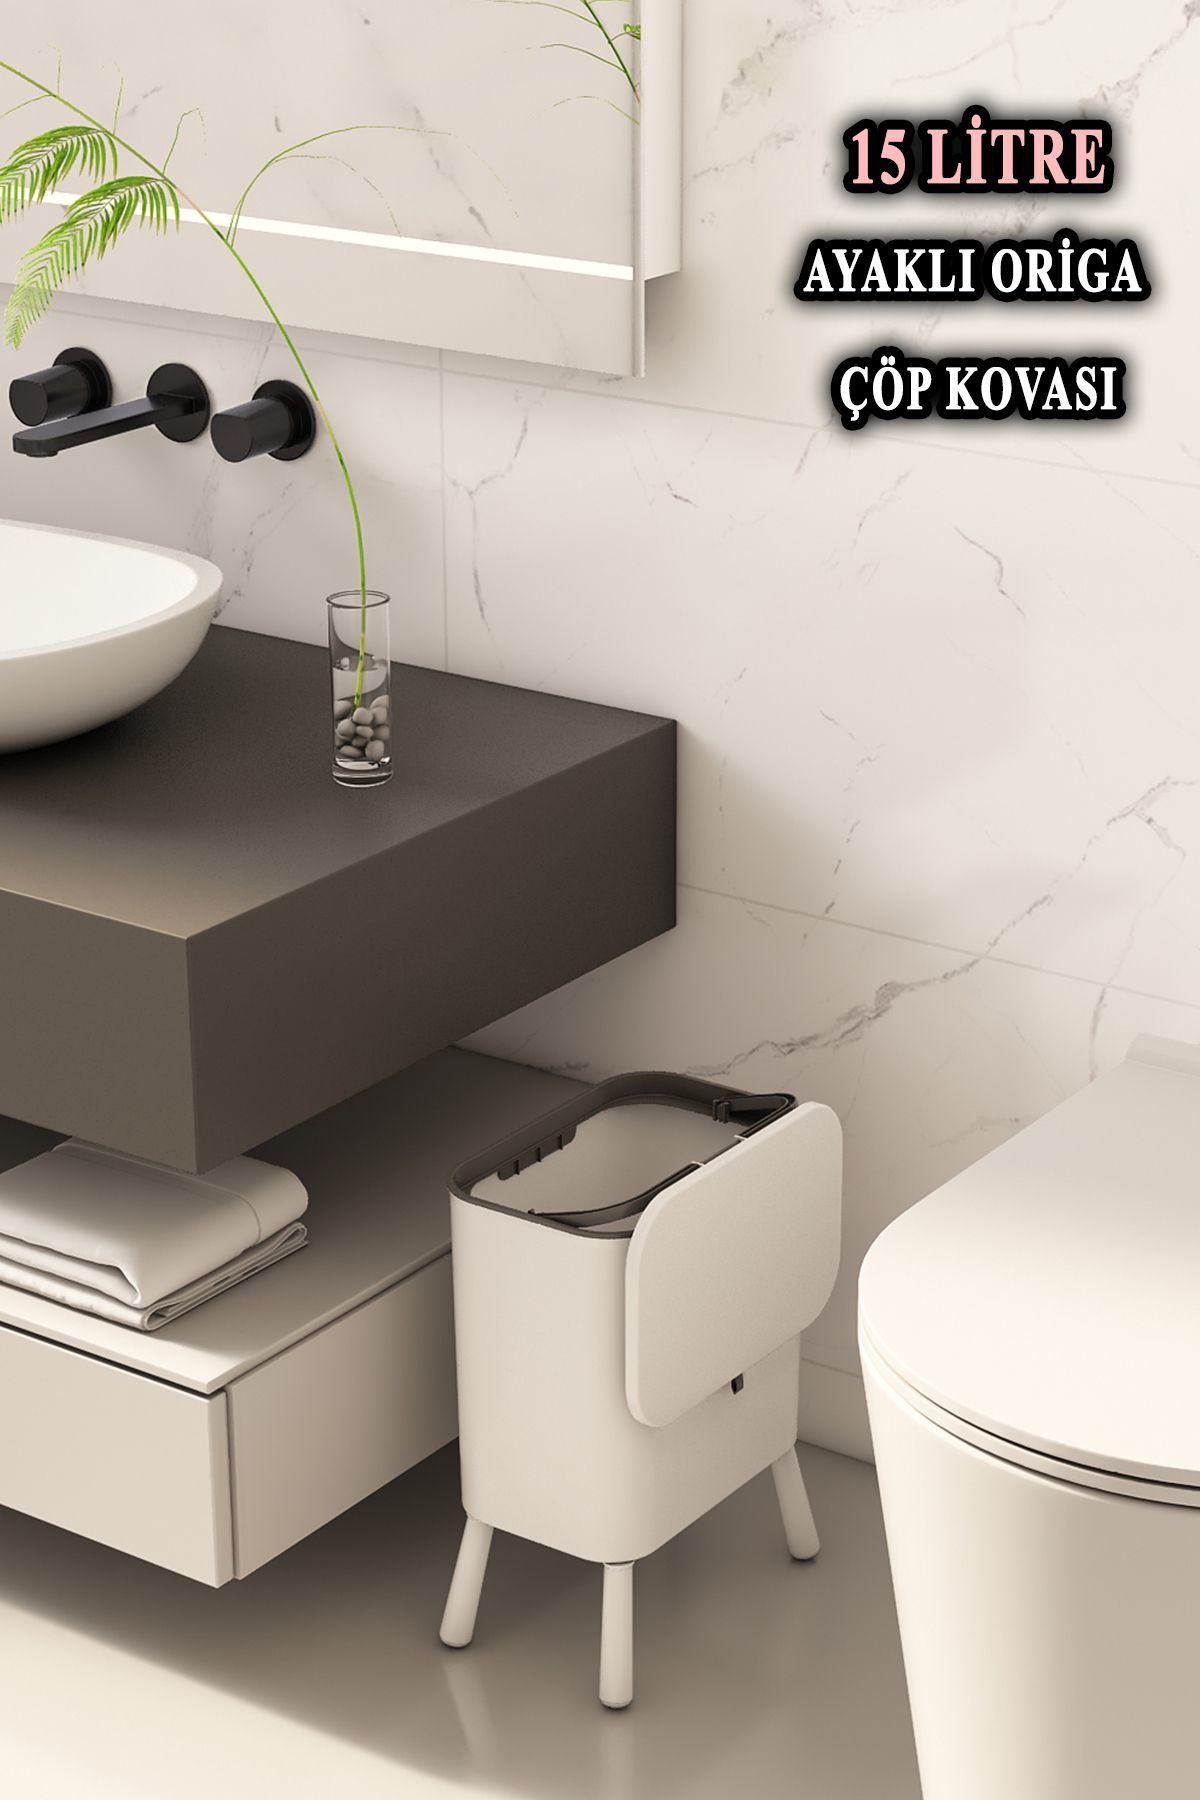 Origa Ayaklı Fonksiyonel Kapaklı Banyo Ve Mutfak Çöp Kovası Beyaz